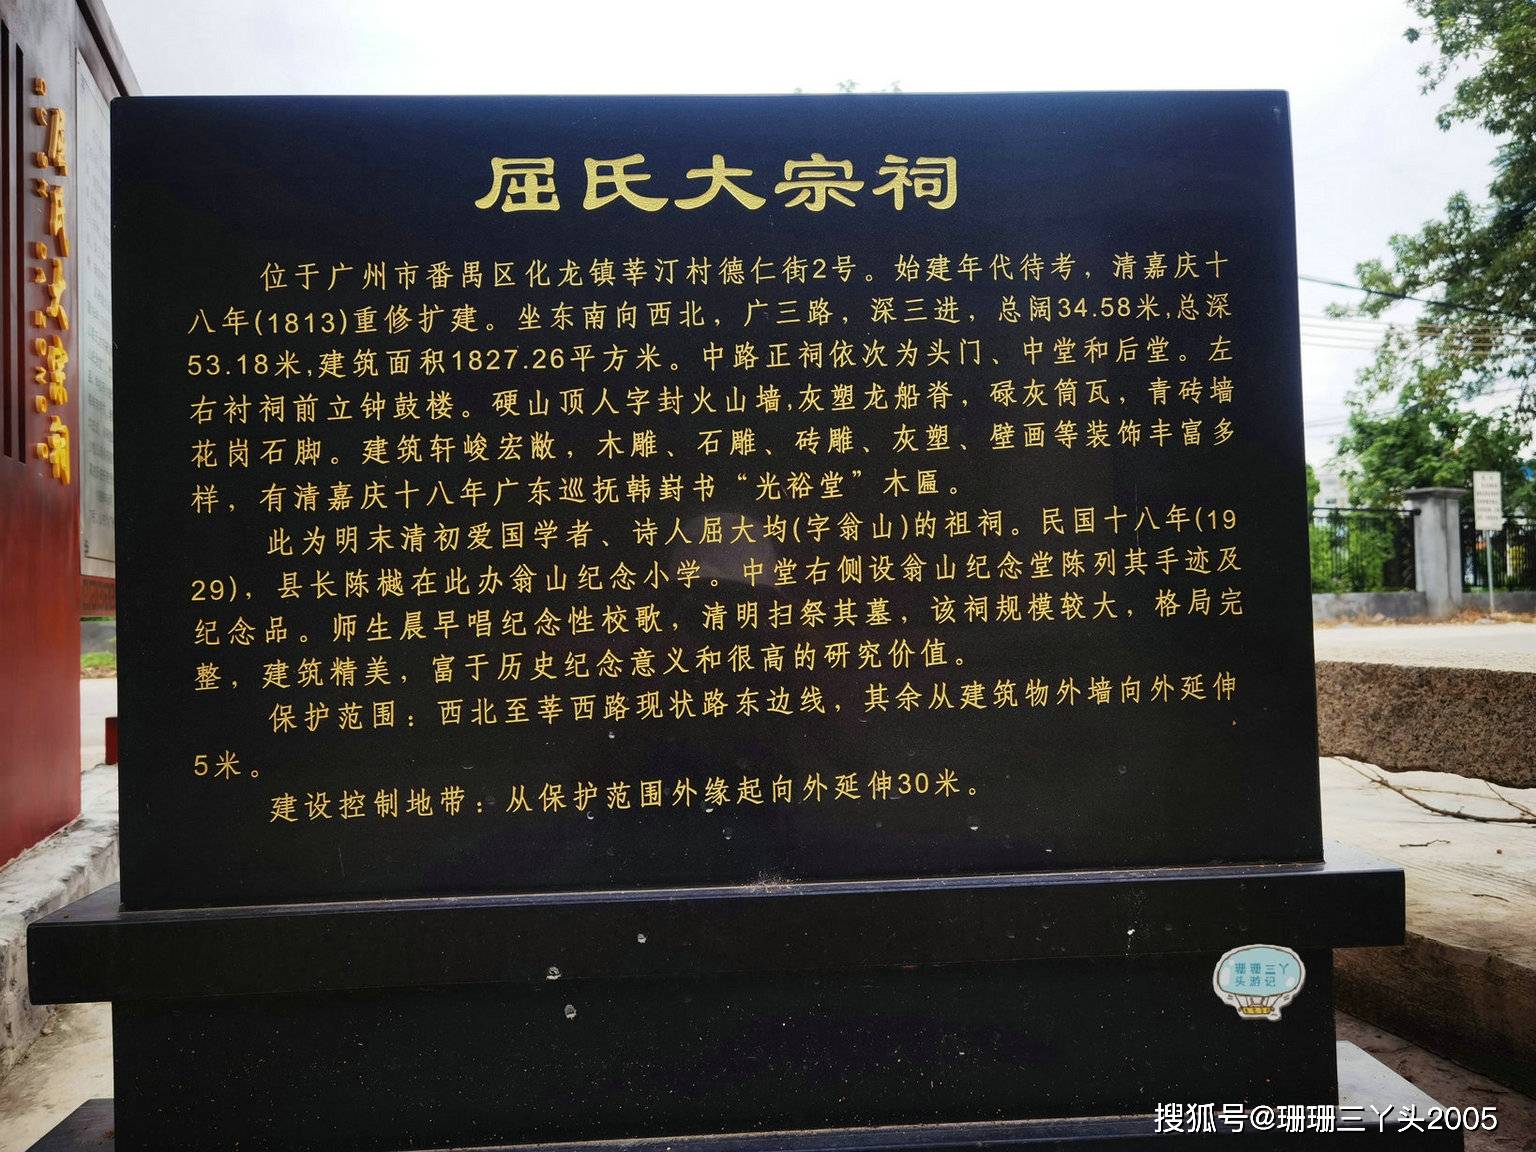 原创广州古村探访:为什么"屈大均"名字在"众多"历史景点中出现?